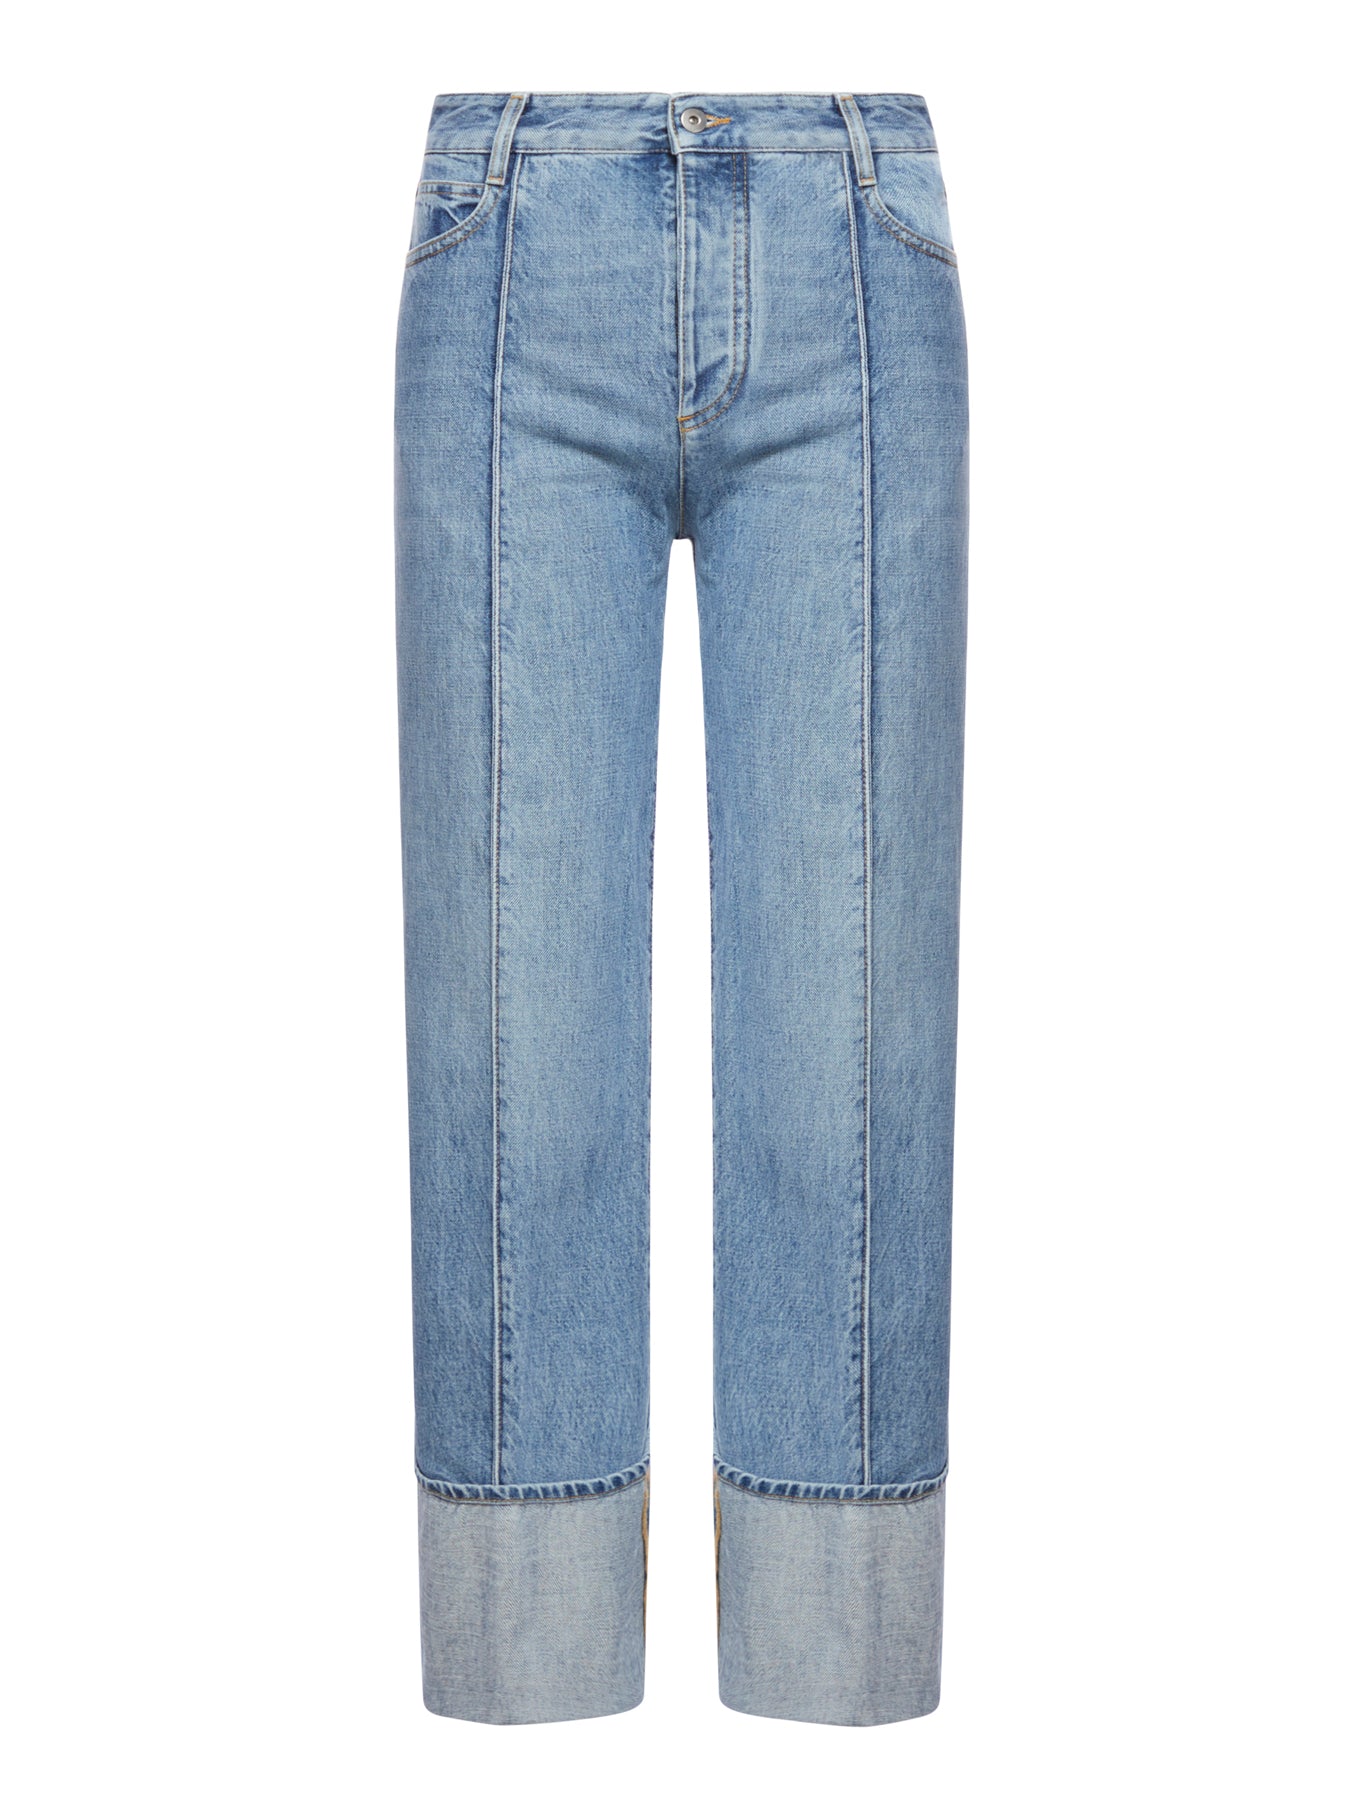 Curved fit jeans in Vintage Indigo denim